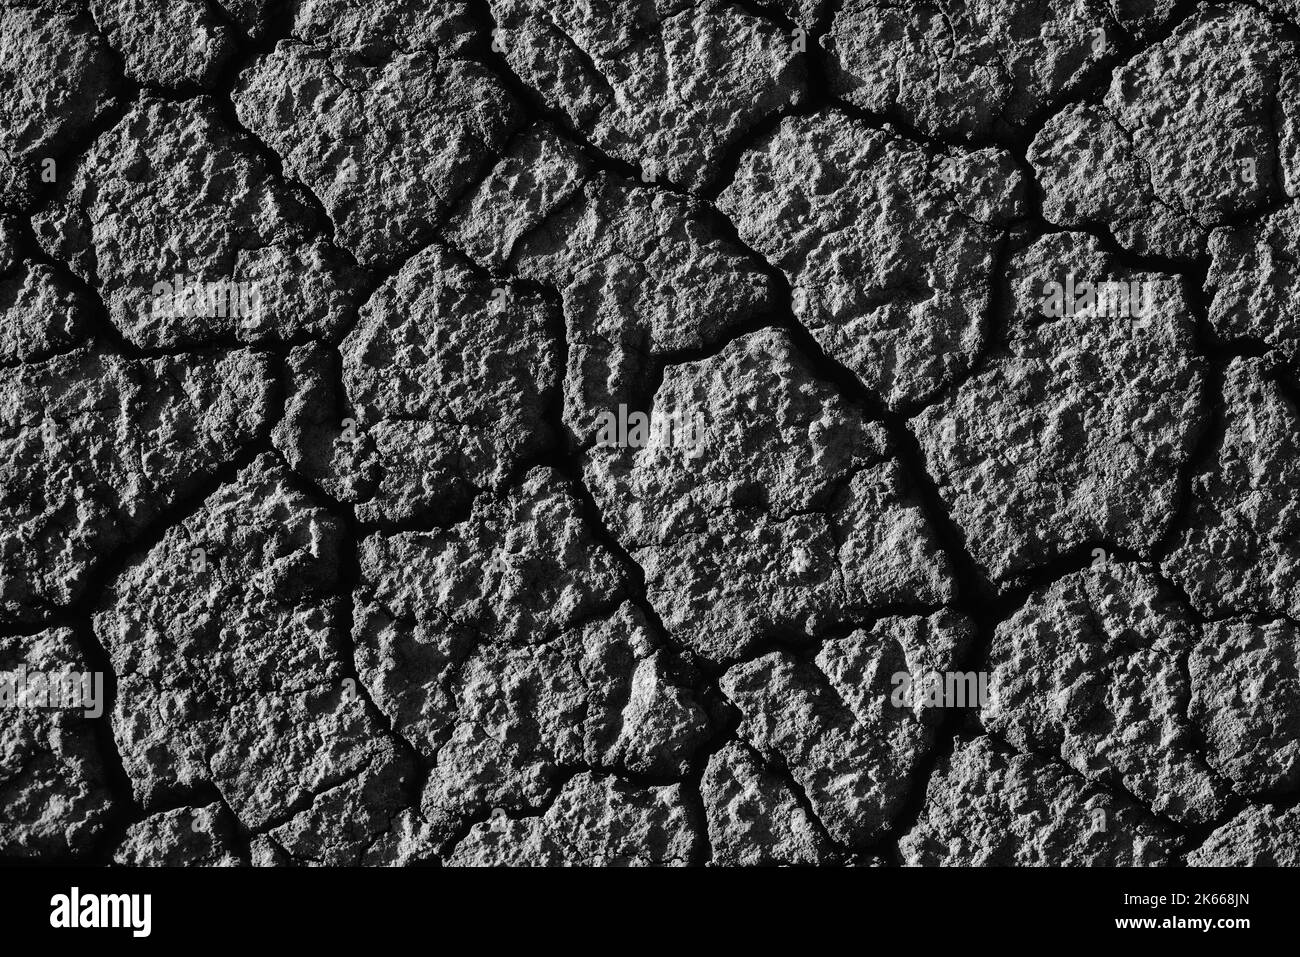 Wüste. Blick auf wunderschöne Risse im Boden. Textur, tiefer Riss. Auswirkungen von Hitze und Dürre. Auswirkungen der globalen Erwärmung. Zerbrochene Wüste Stockfoto